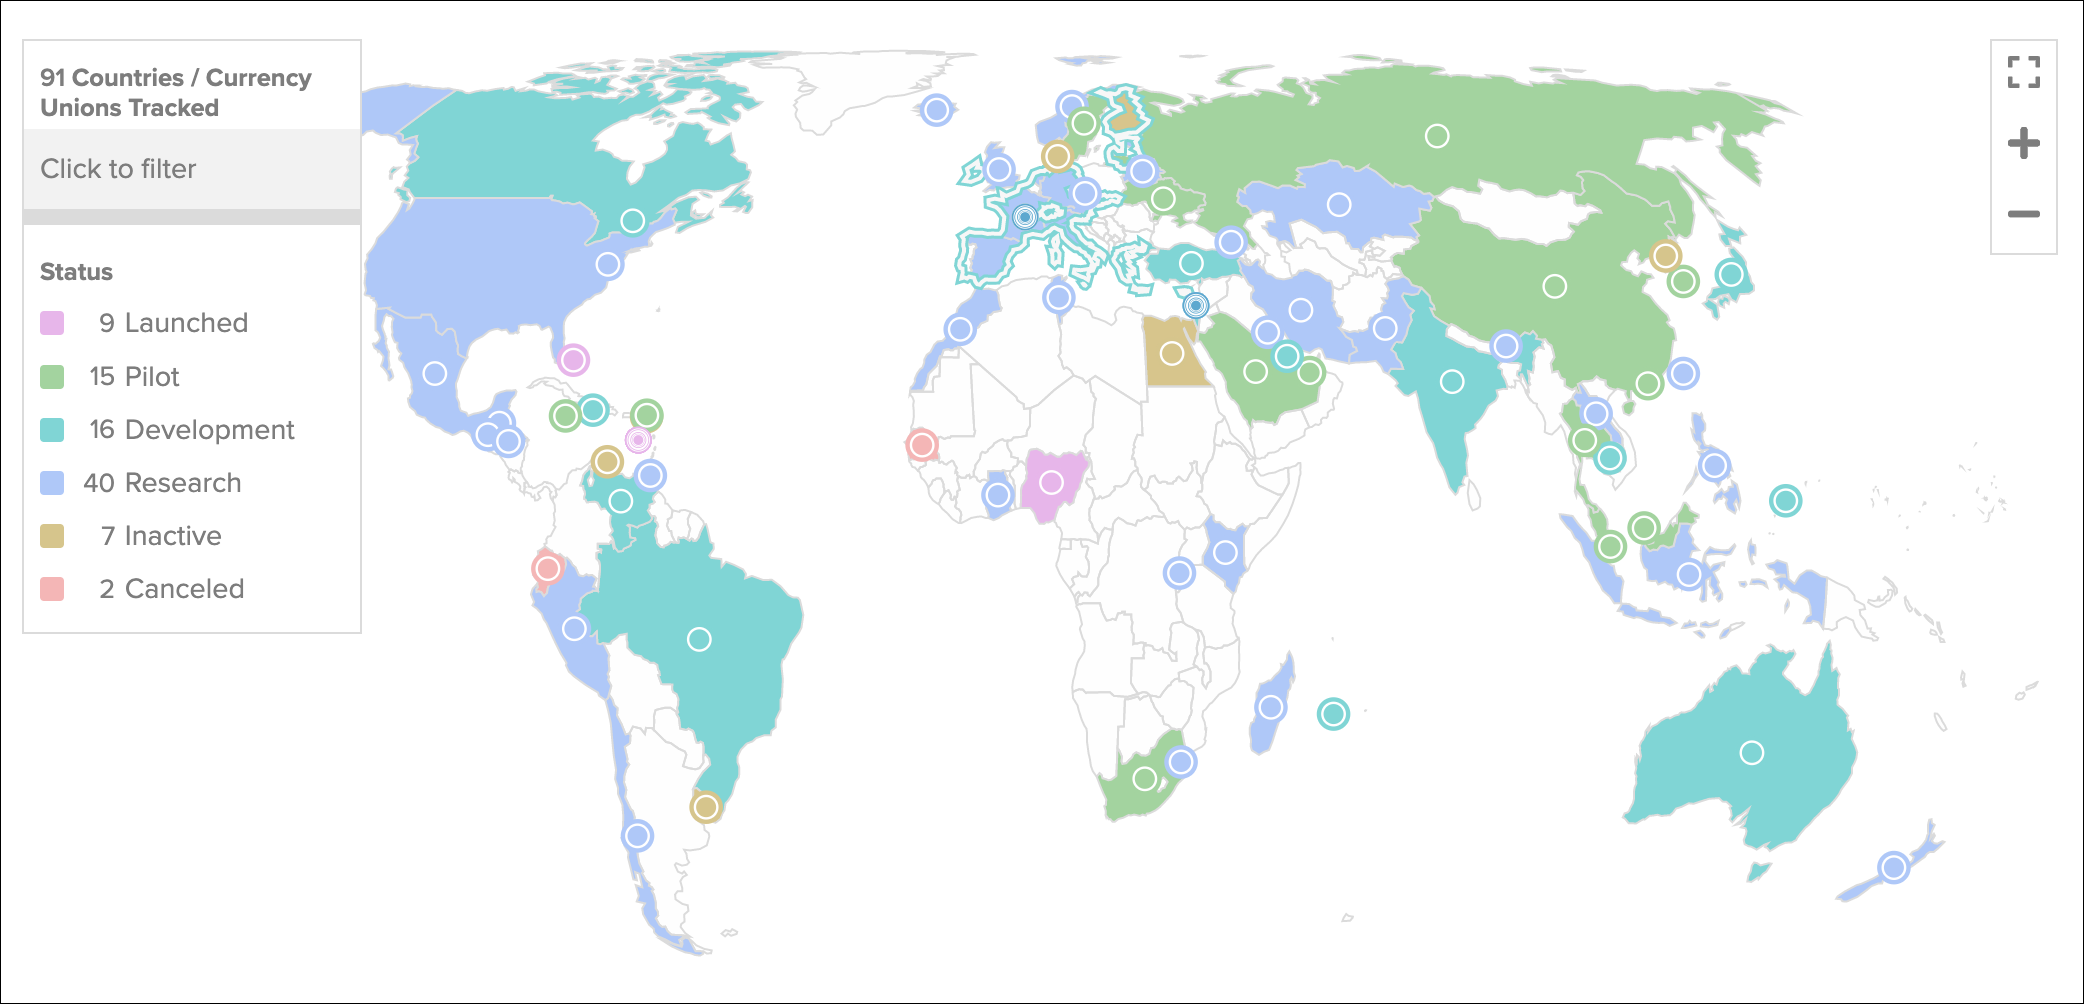 Desenvolvimento de CBDCs por país com base em códigos de cores